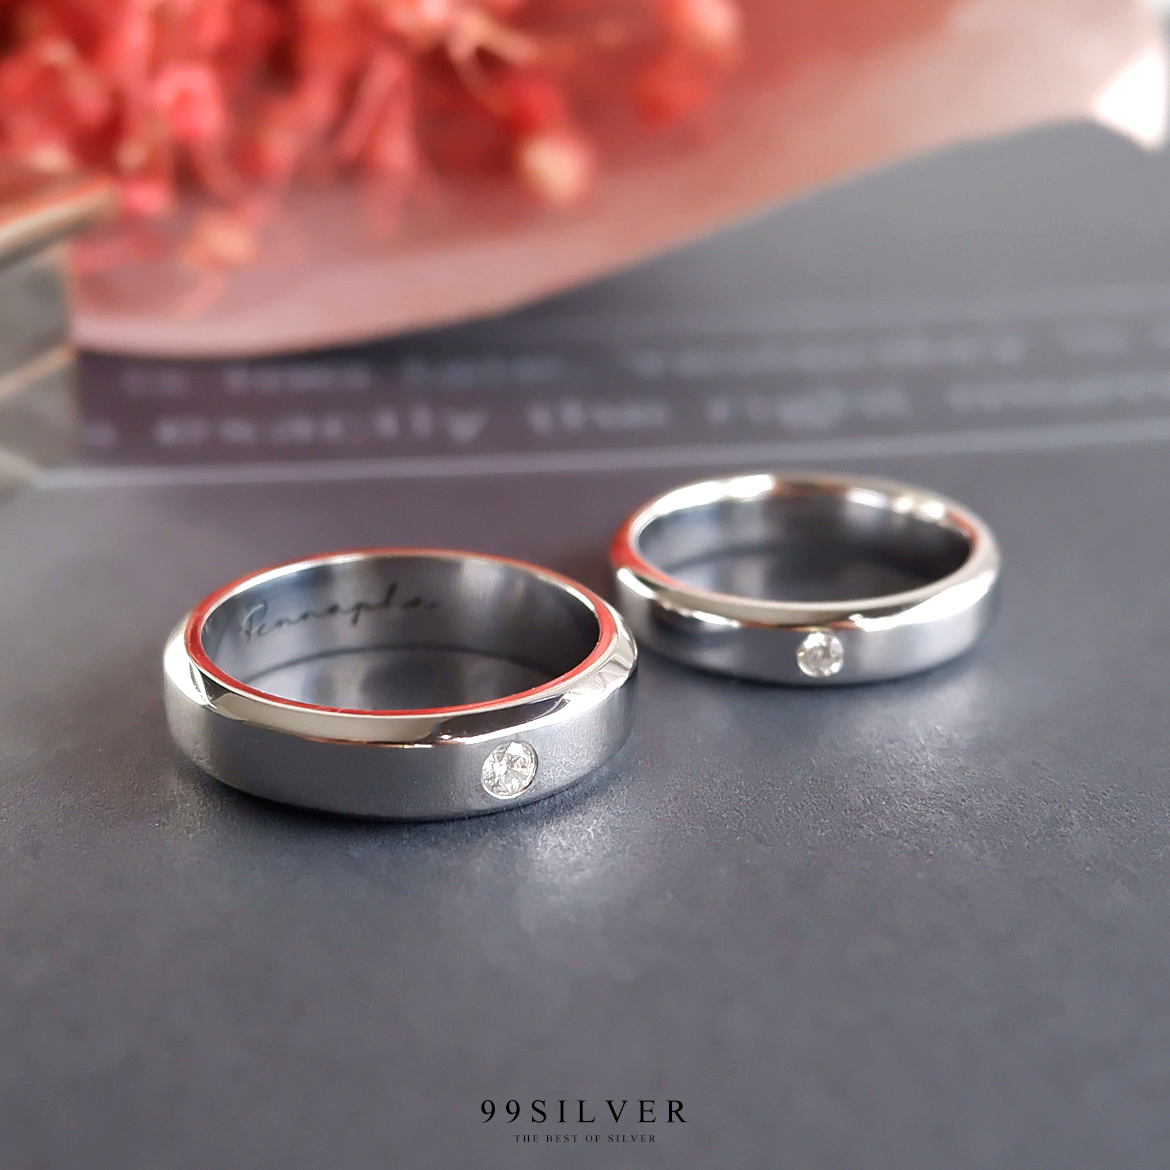 แหวนคู่รักลดขอบฝังเพชรวงละ 1 เม็ด หน้าแหวน 4 และ 6 มิลลิเมตร